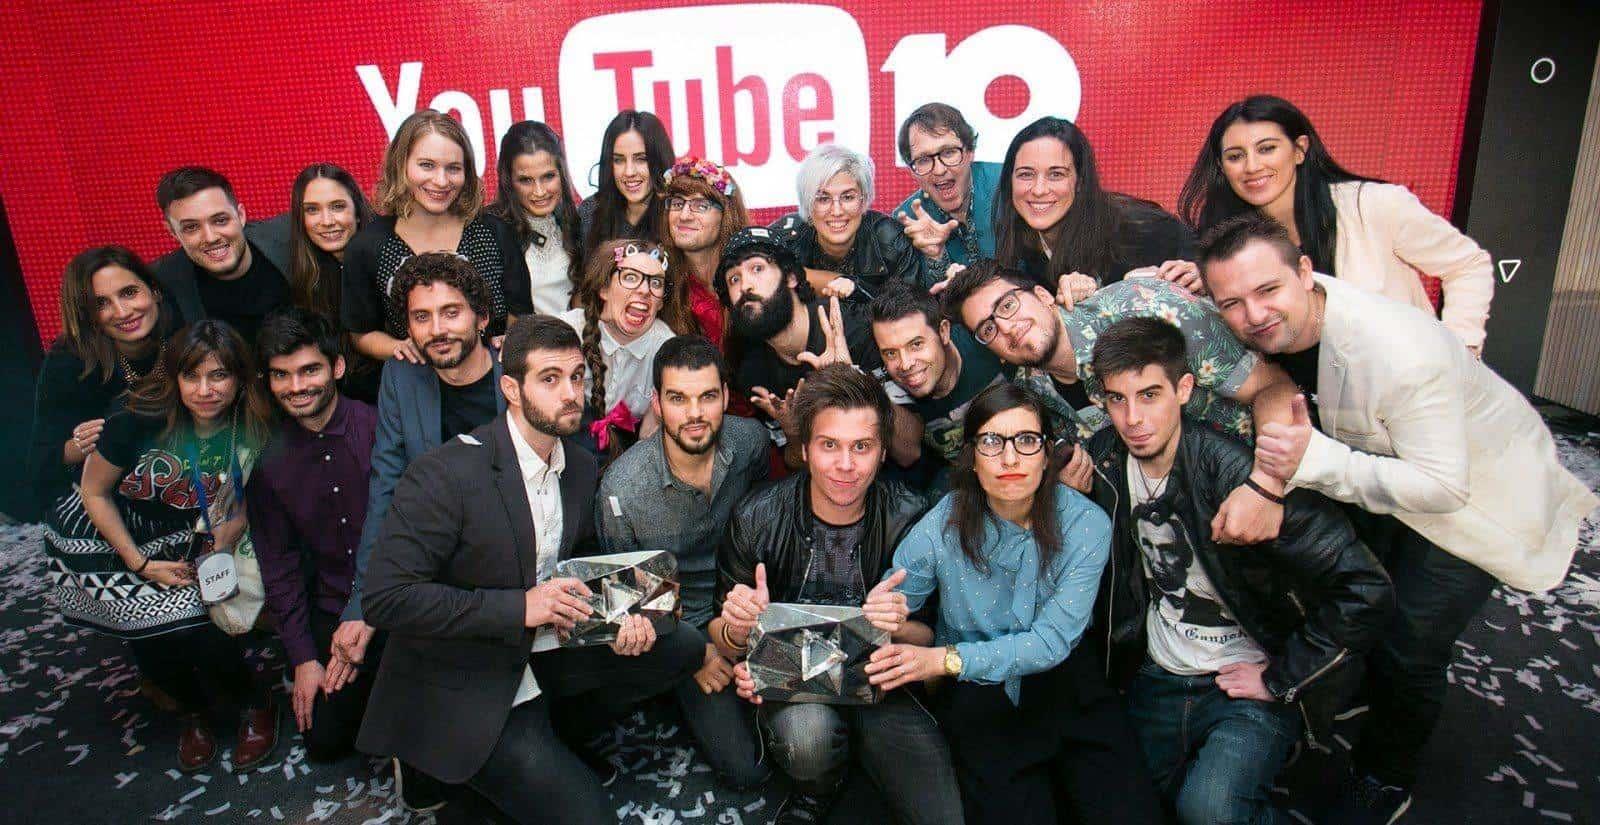 Ni médicos o ingenieros, los jóvenes mexicanos anhelan ser YouTuber